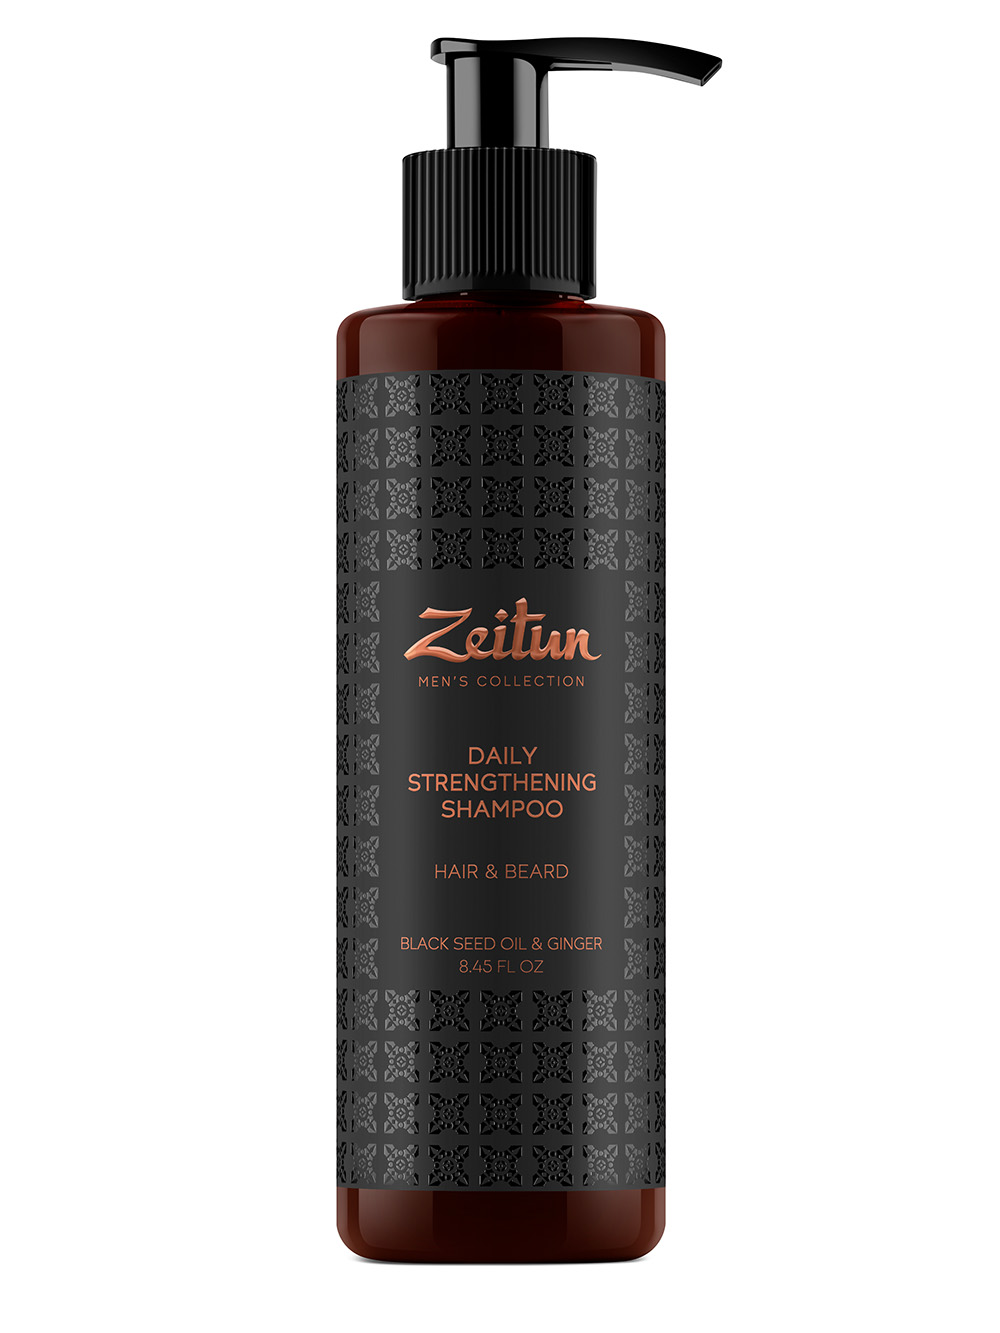 Zeitun Укрепляющий шампунь с имбирем и черным тмином для волос и бороды, 250 мл (Zeitun, Mens Collection)